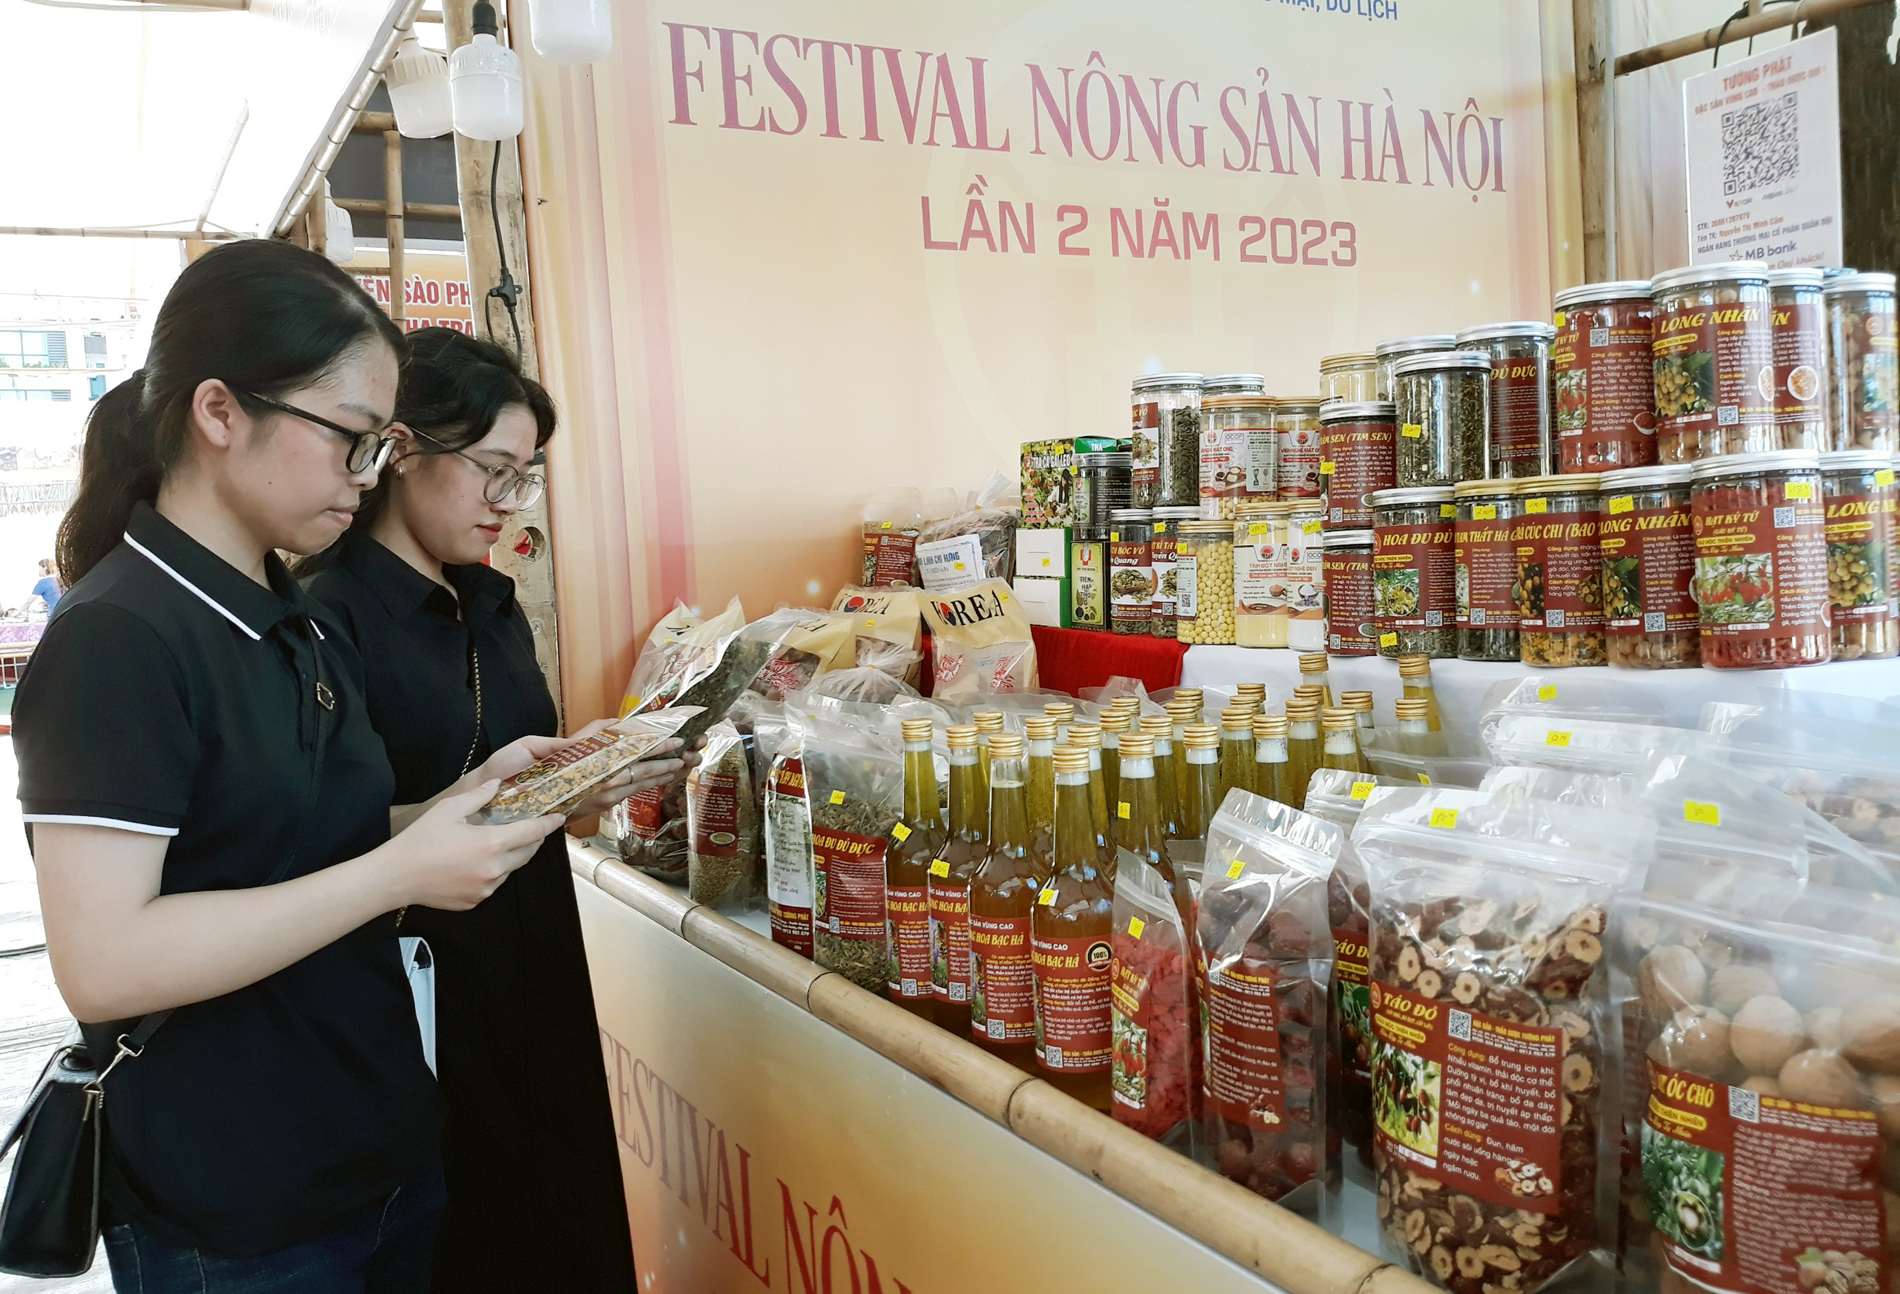 20 tỉnh thành tham gia Festival nông sản Hà Nội lần 2 năm 2023 - Ảnh 5.